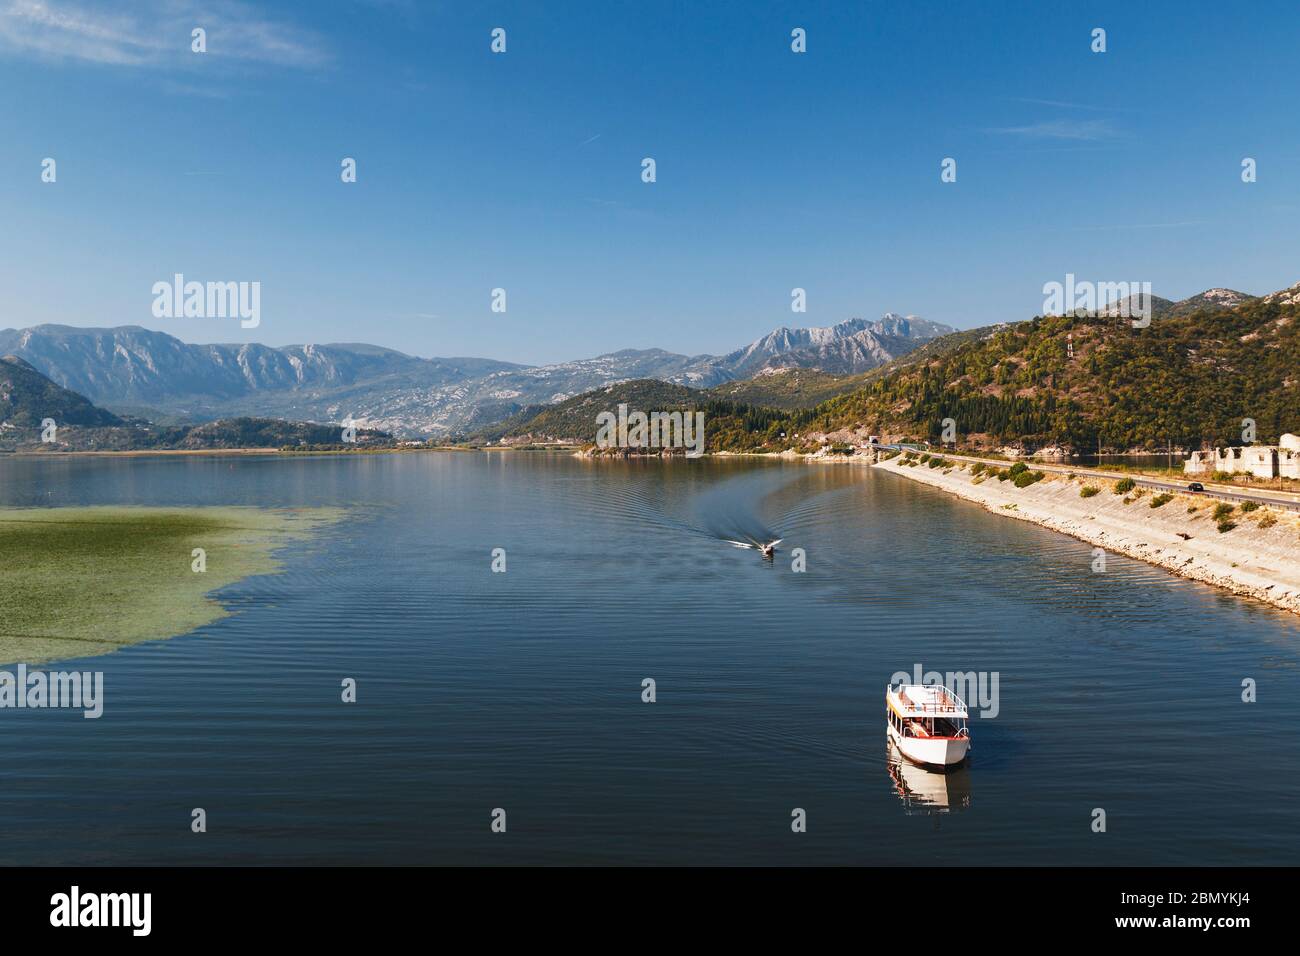 Ein schöner Blick auf die Landschaft am Skadar See in Montenegro, berühmte Touristenattraktion und der größte See in Südeuropa. Stockfoto